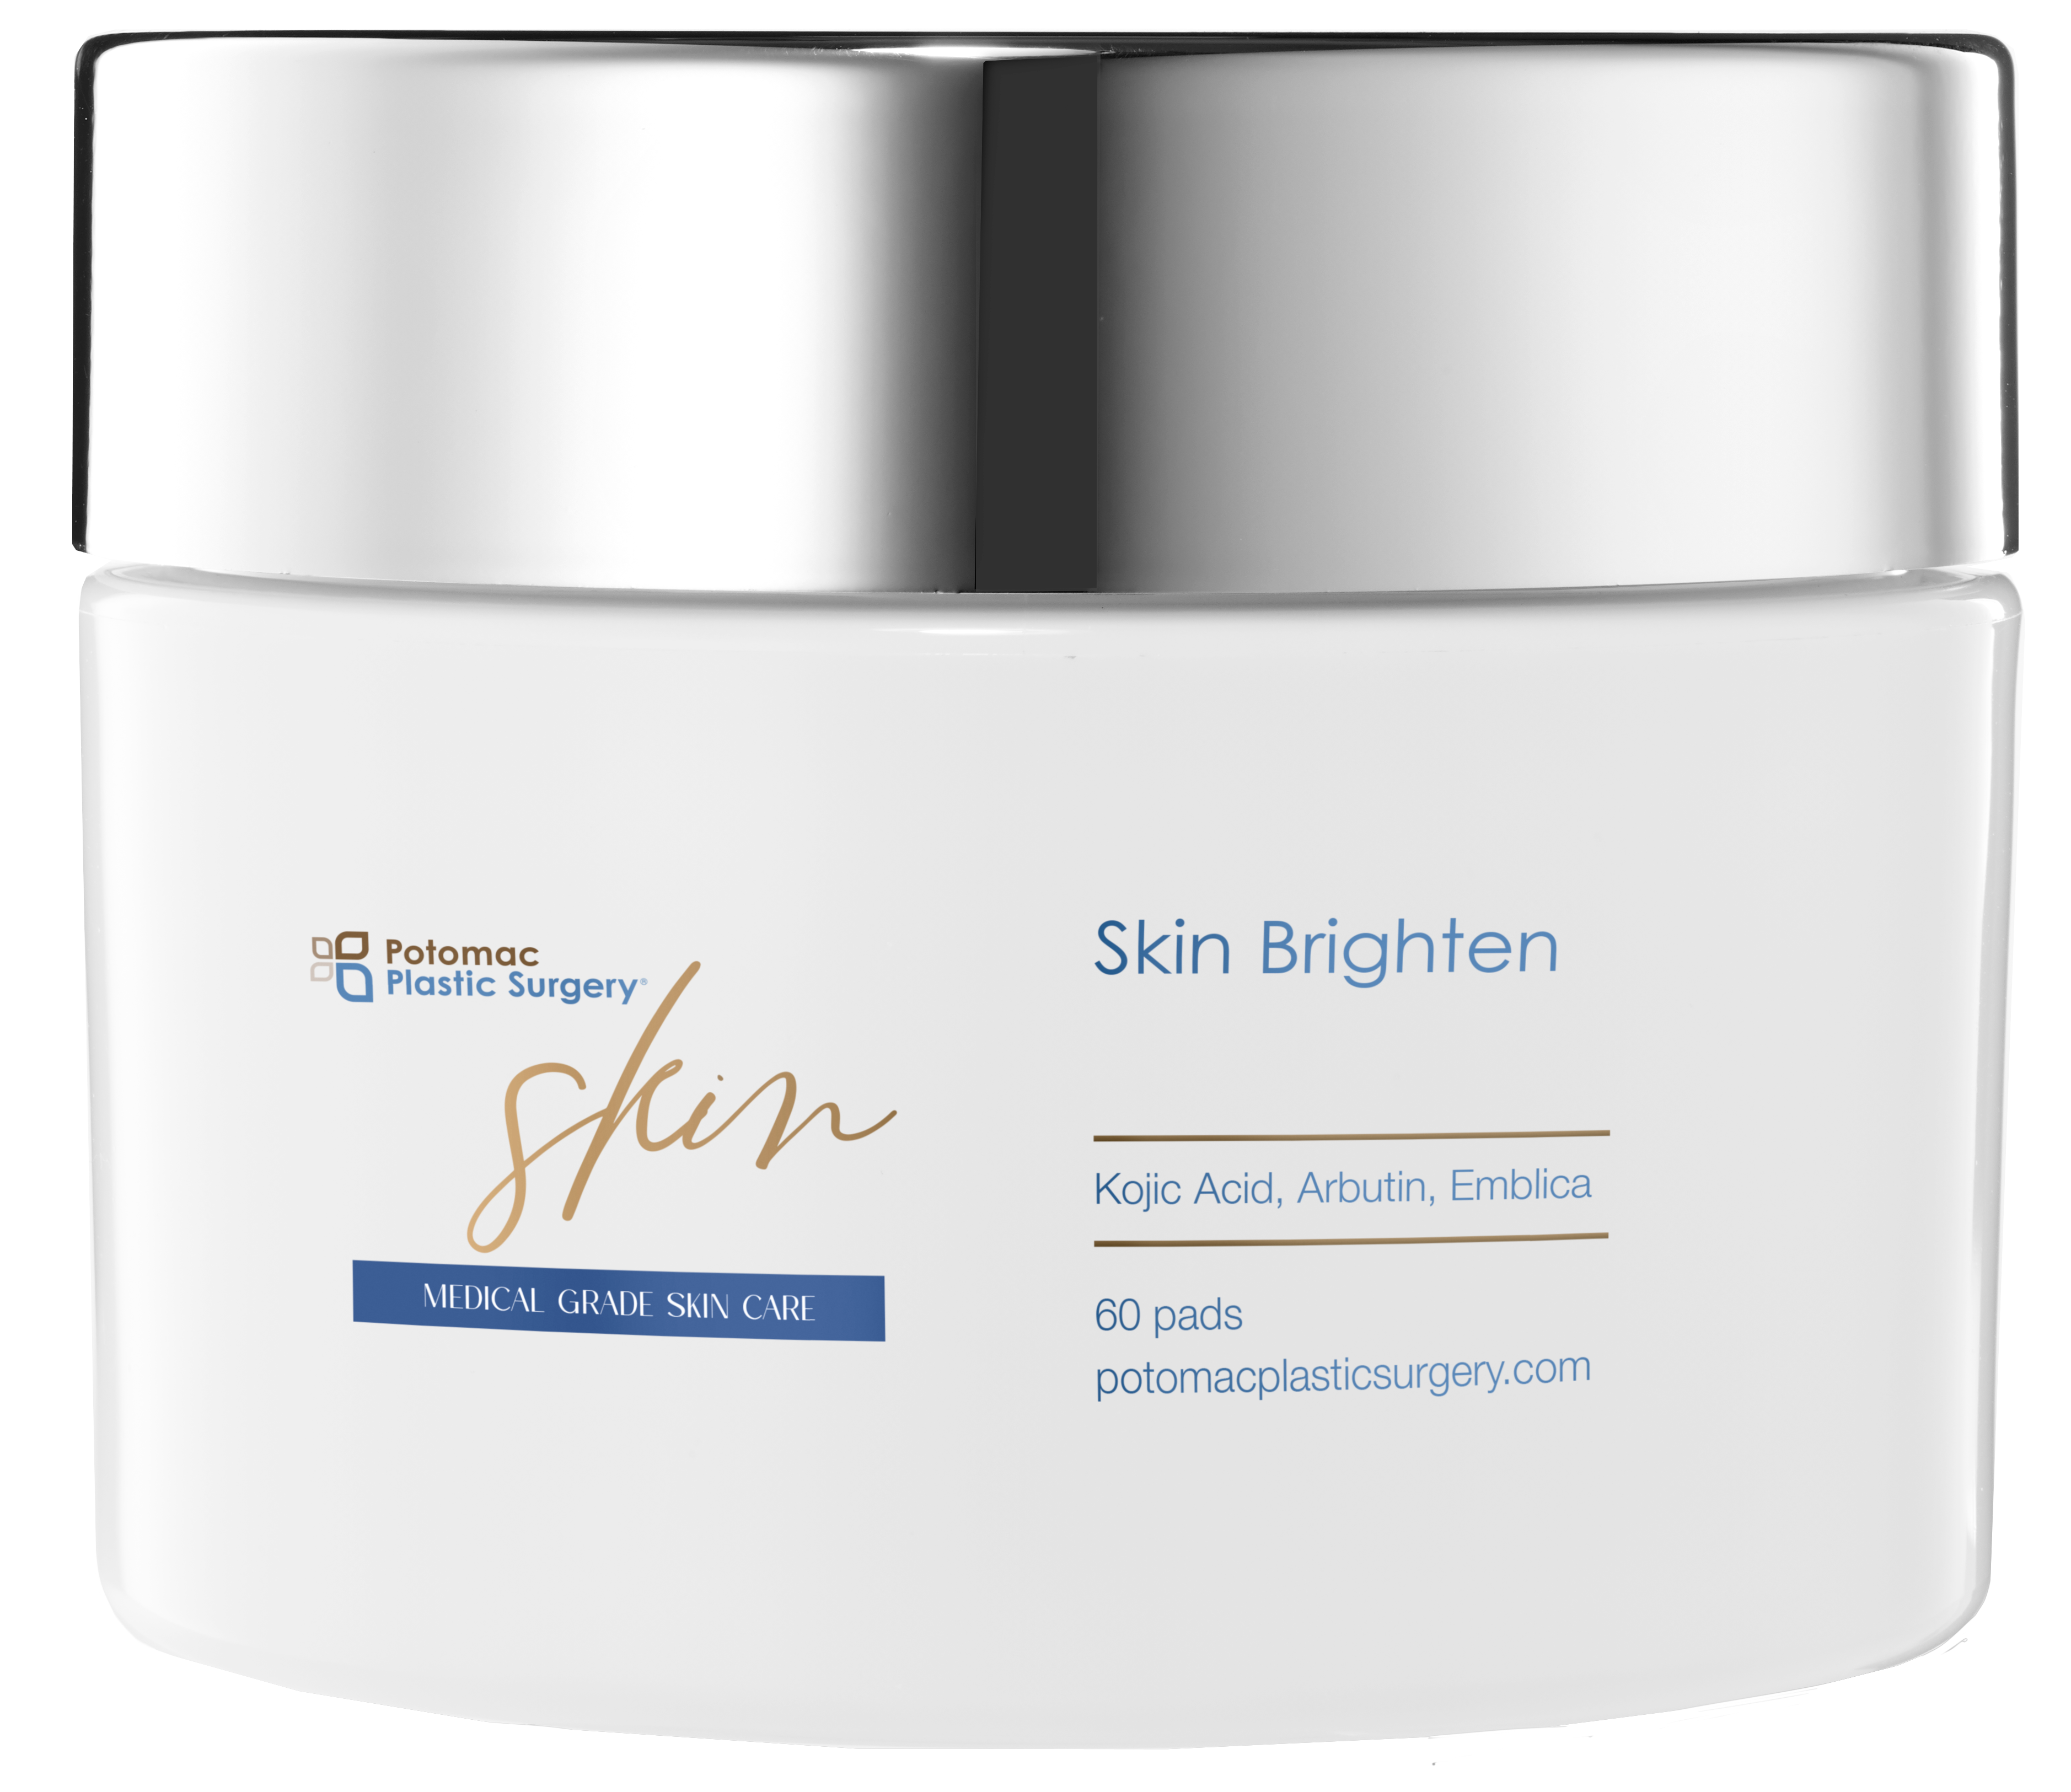 Skin Brighten Therapy Kit: Brighten 6%